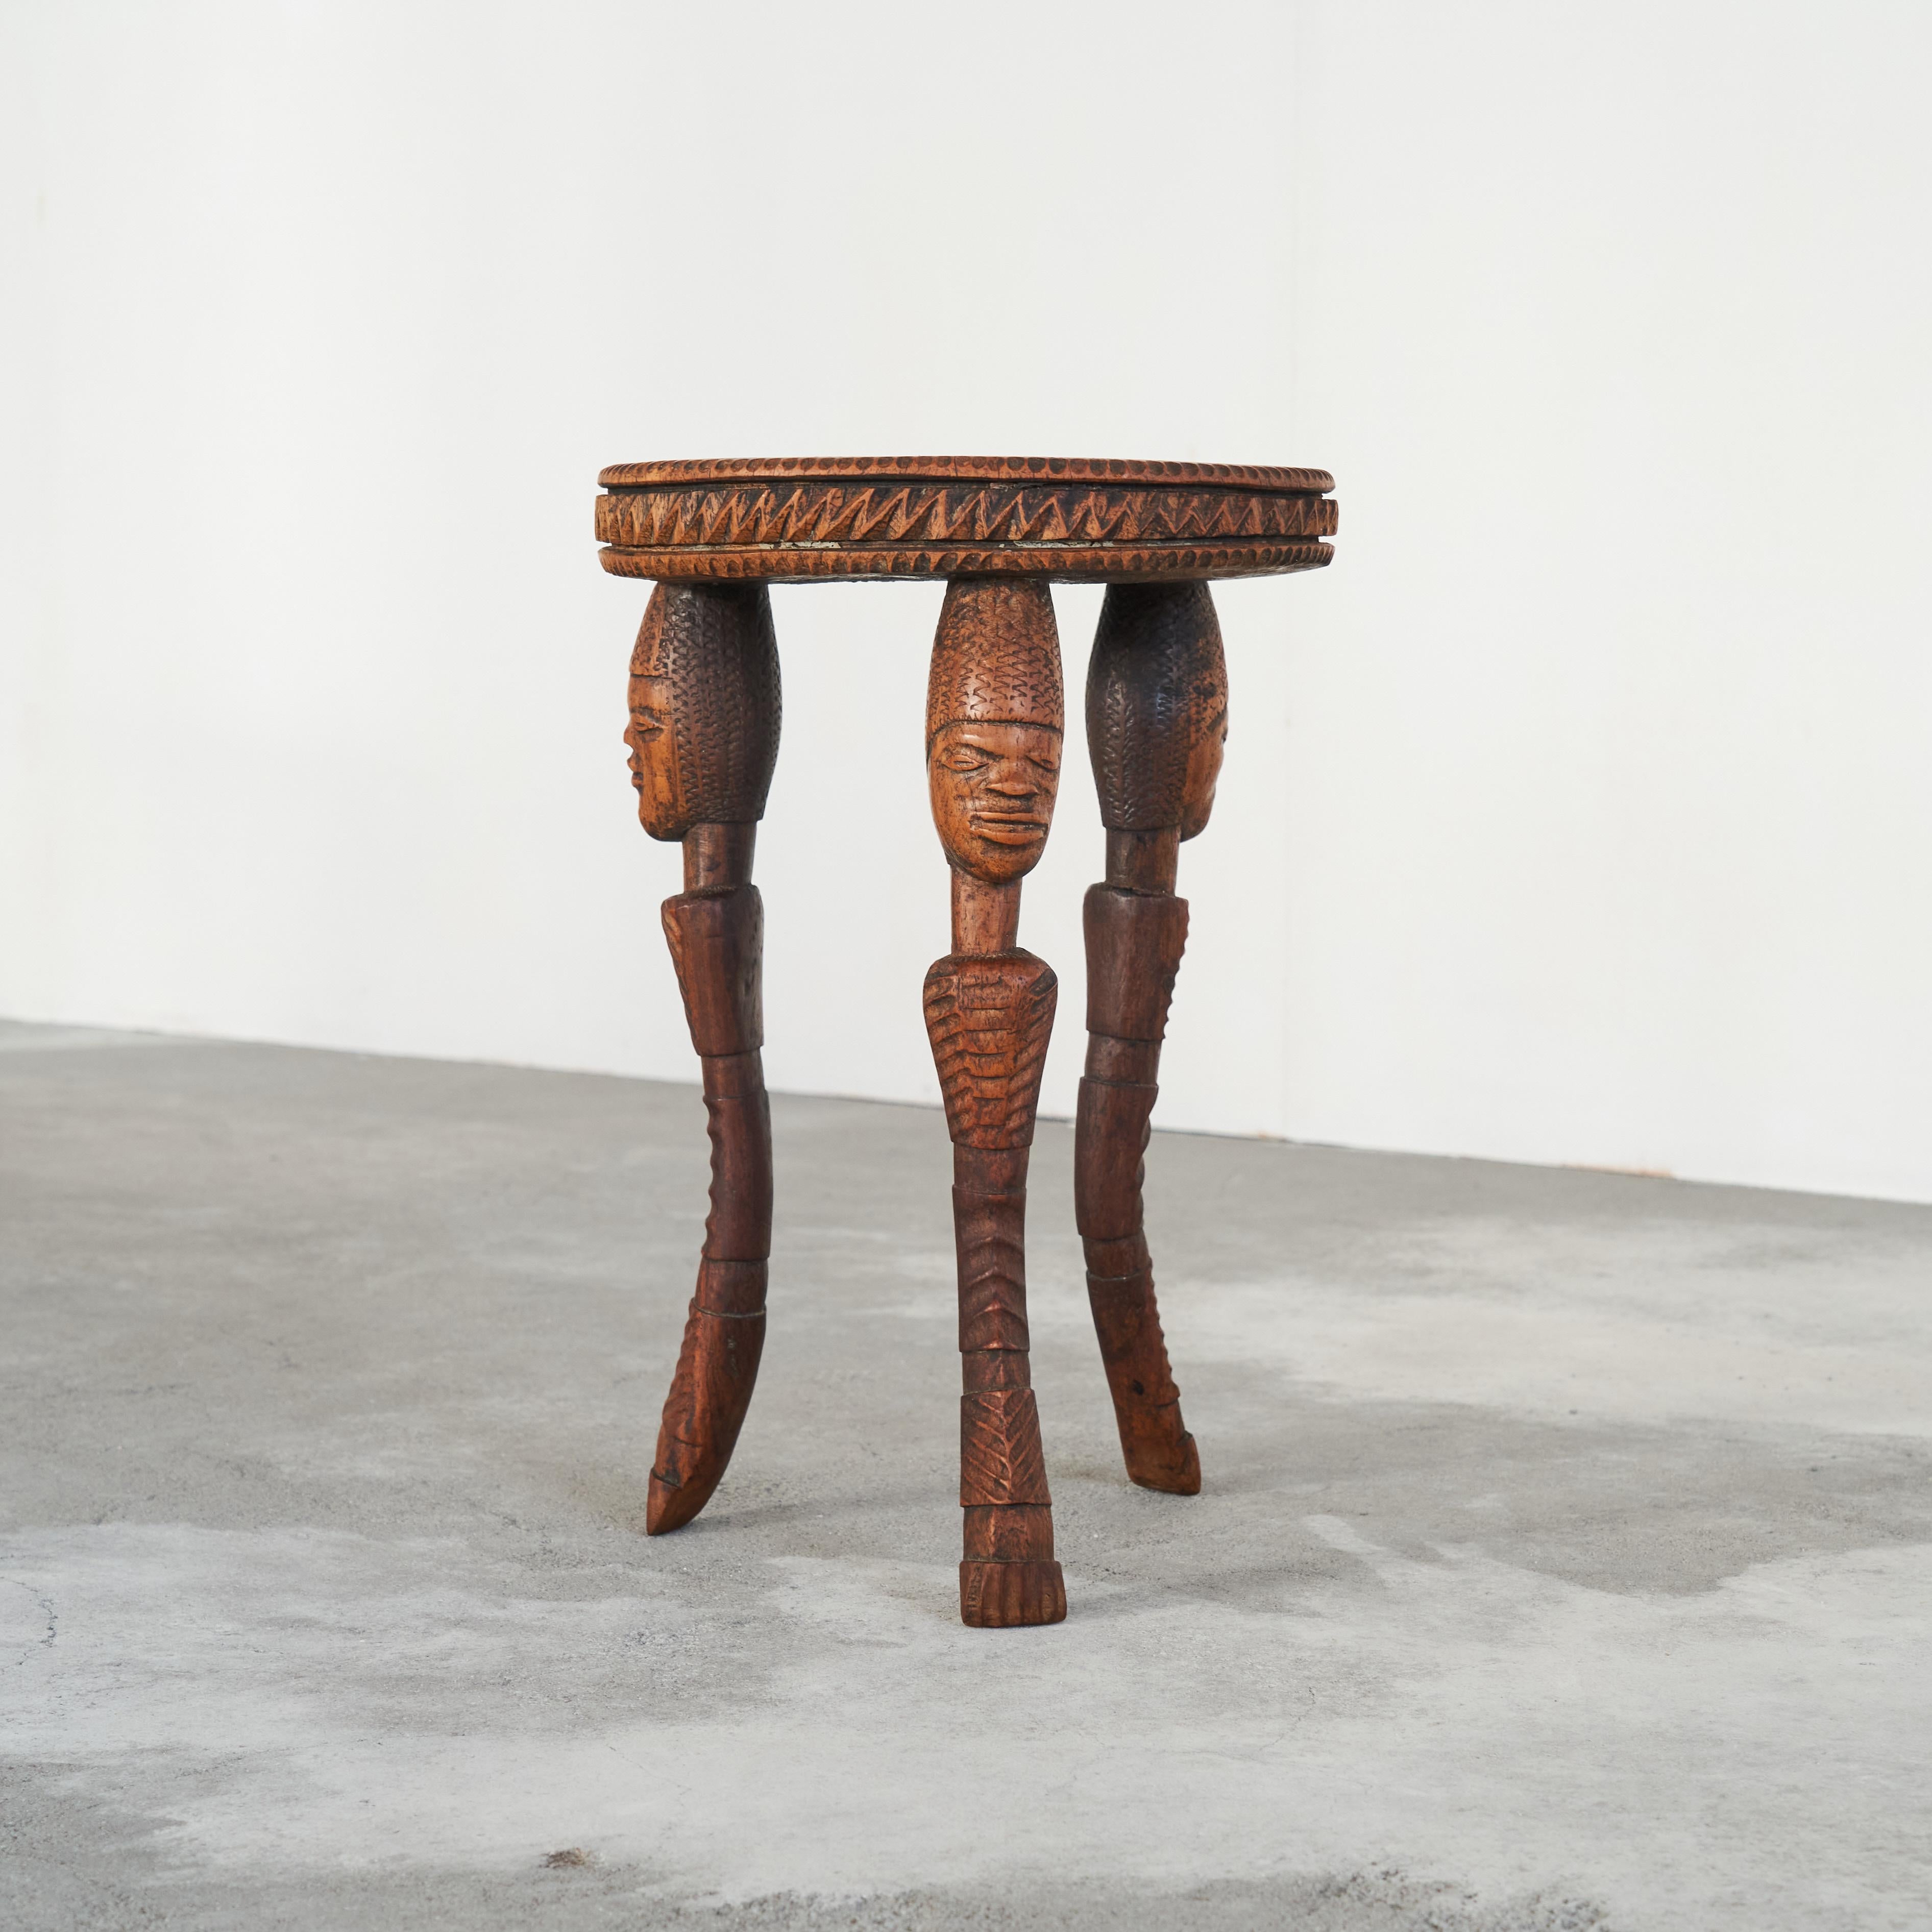 Table d'appoint africaine ancienne en bois massif sculpté et en os incrusté.

Magnifique table d'appoint en bois massif sculpté et incrusté de morceaux d'os. Véritable pièce d'art populaire africain de qualité, cette table a une apparence très